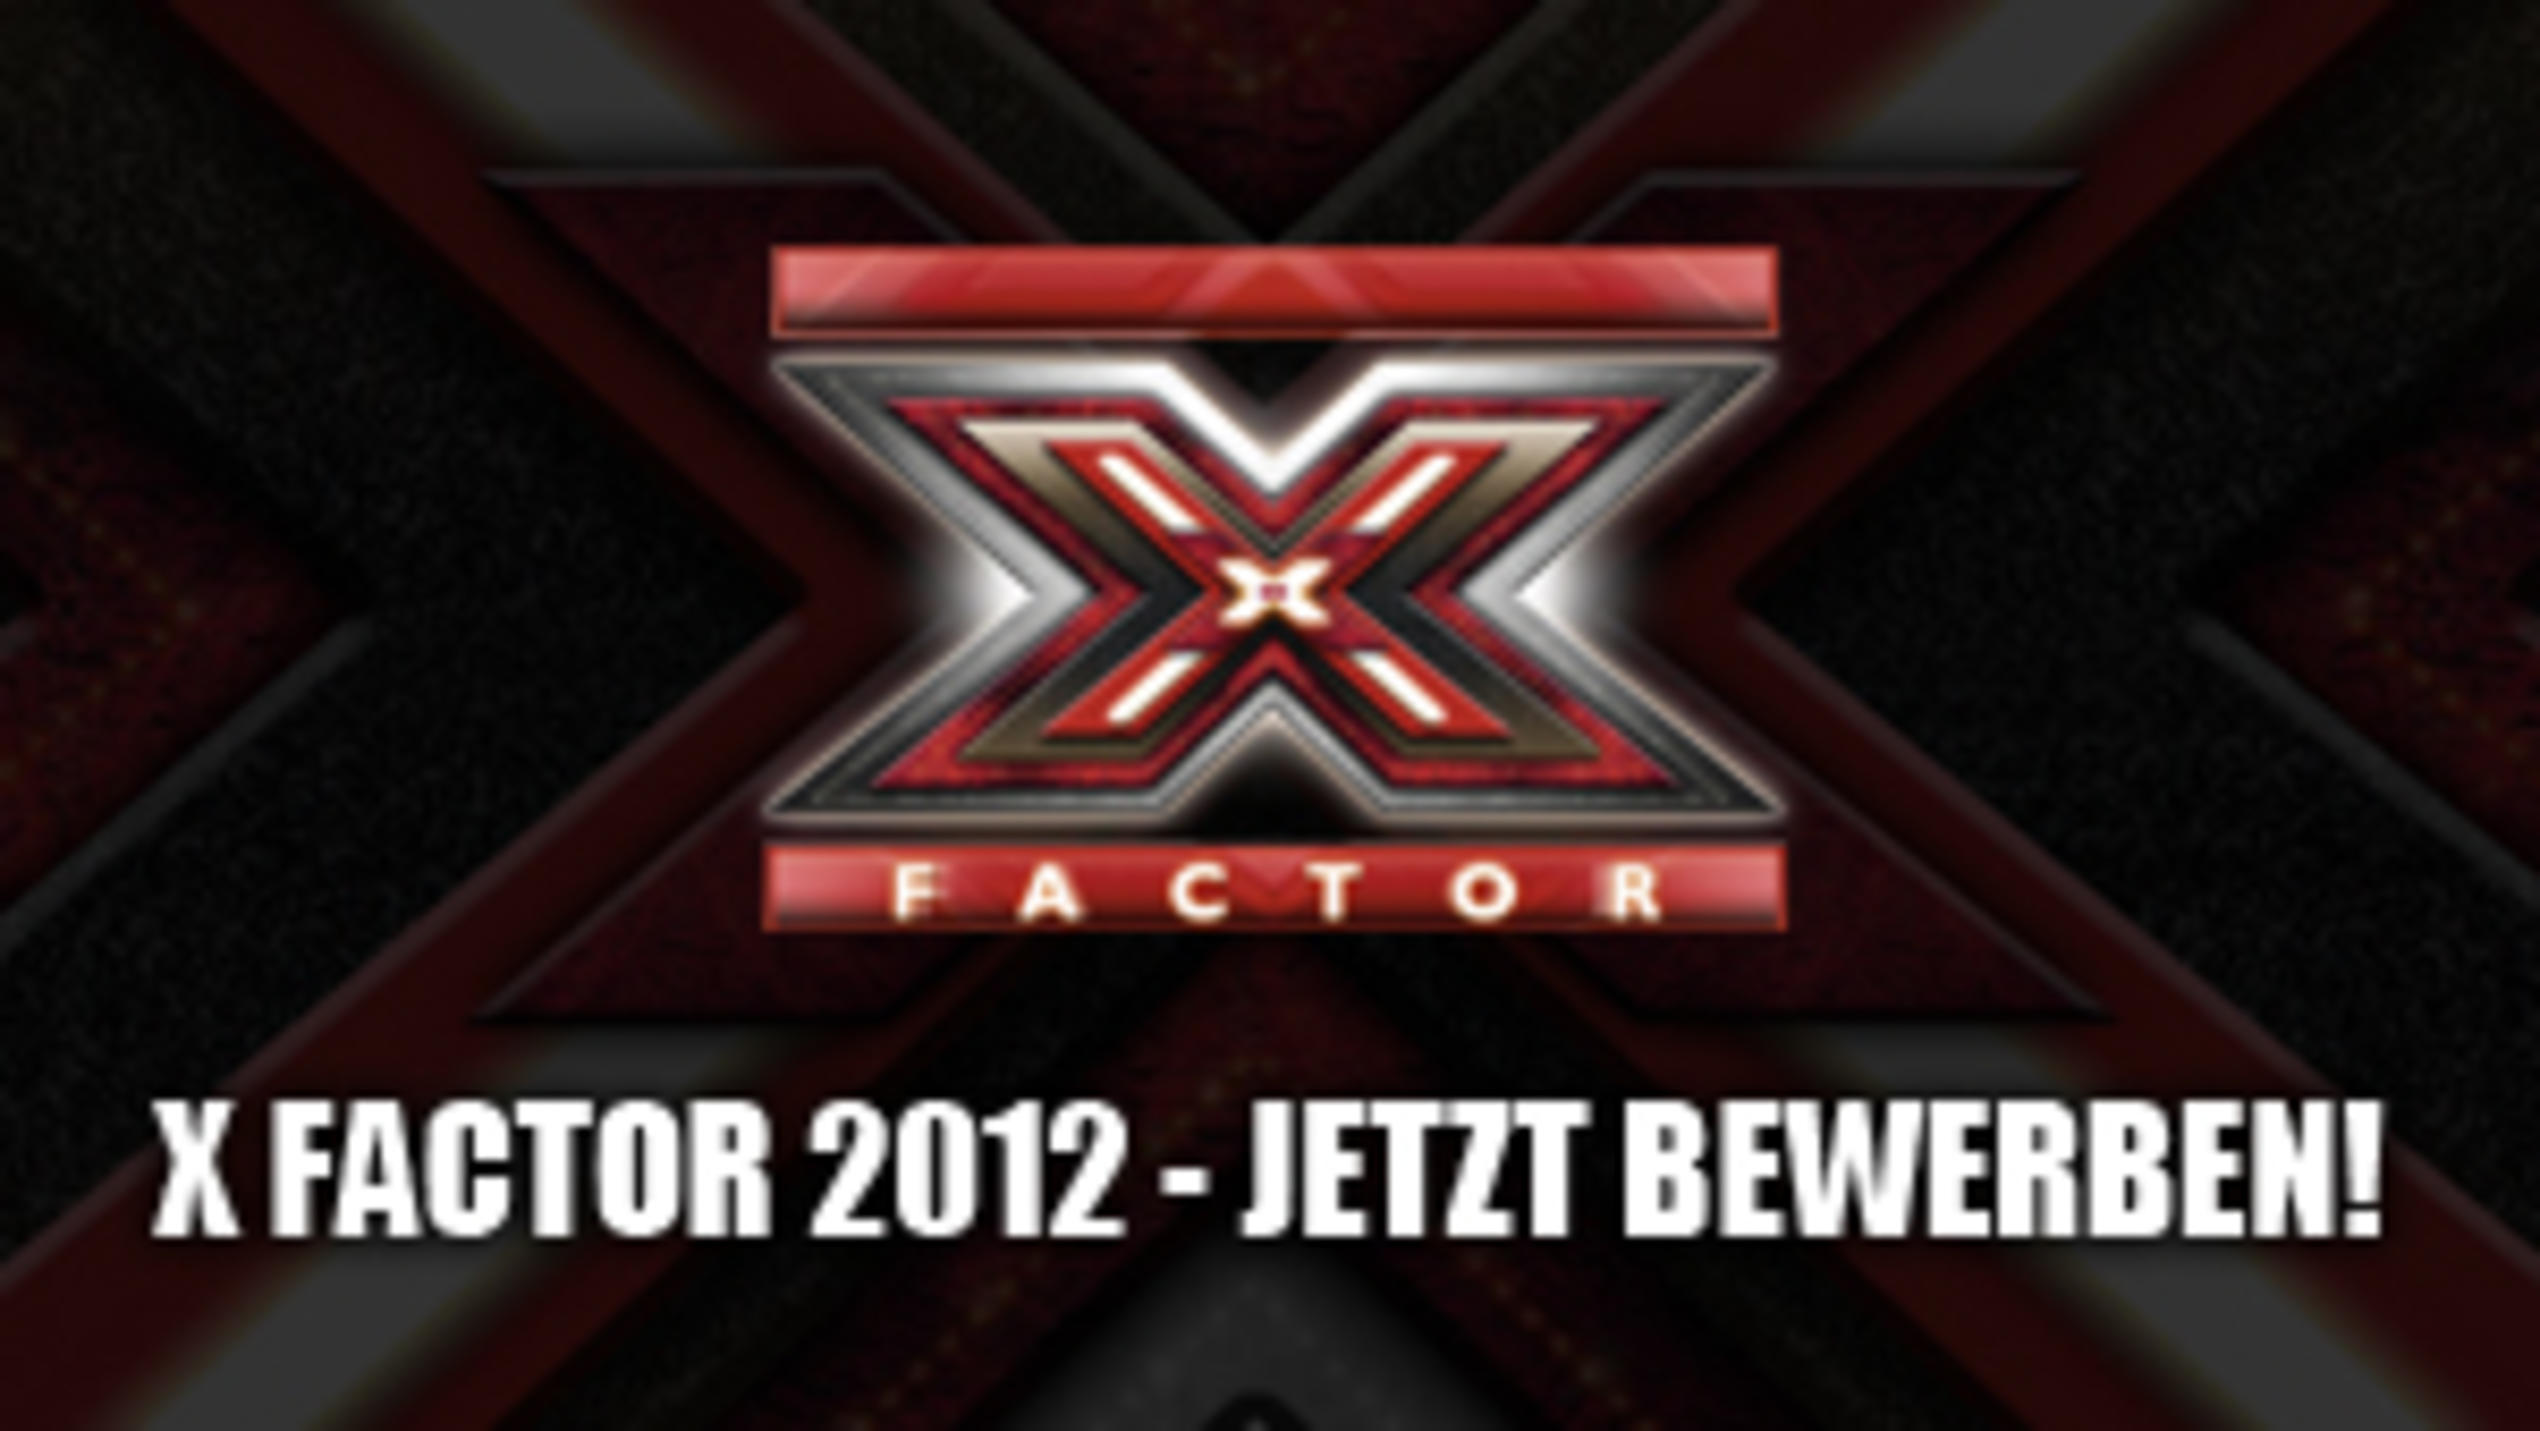 Die dritte Staffel - bewerbt euch für X Factor 2012!